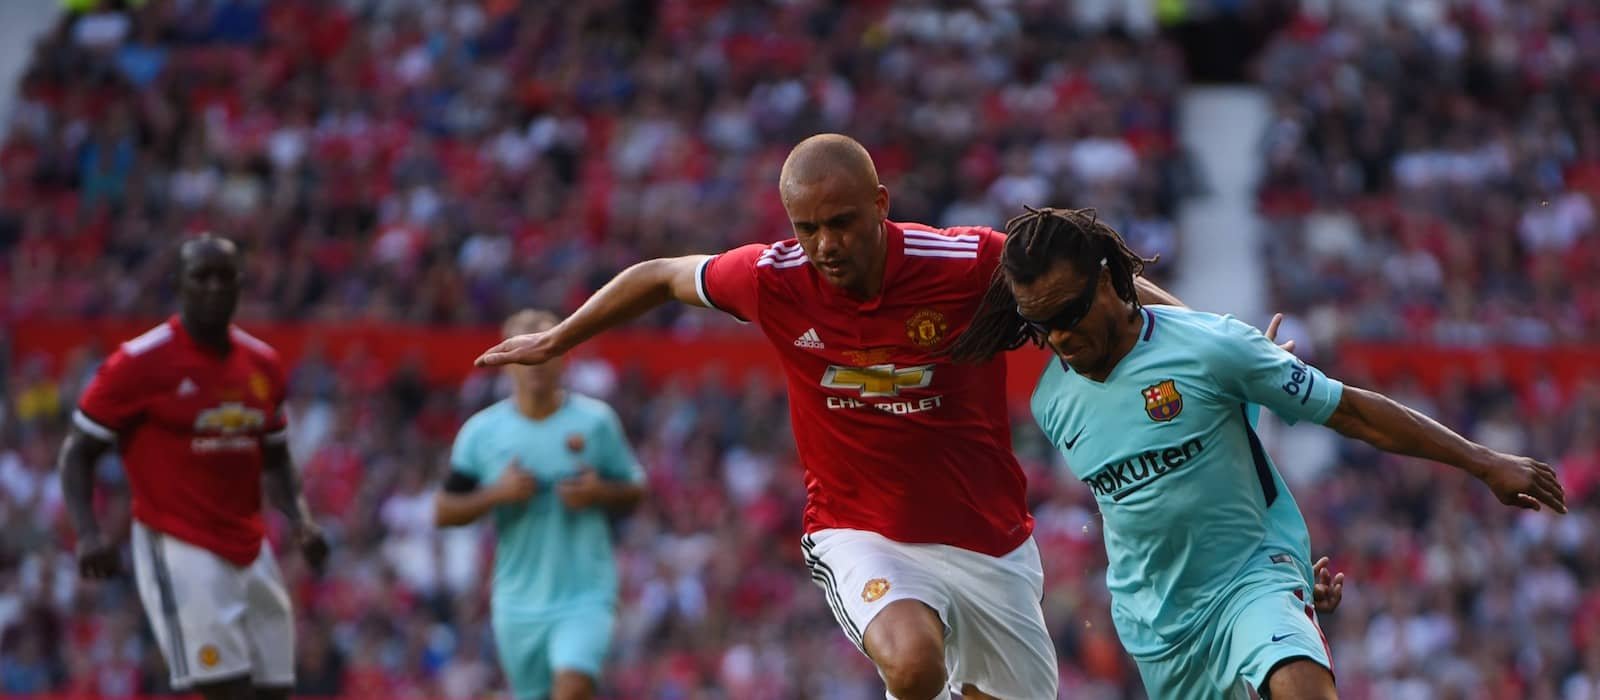 Les llegendes del Manchester United es reuneixen per a un partit a Dubai contra un onze mundial - Man United News And Transfer News